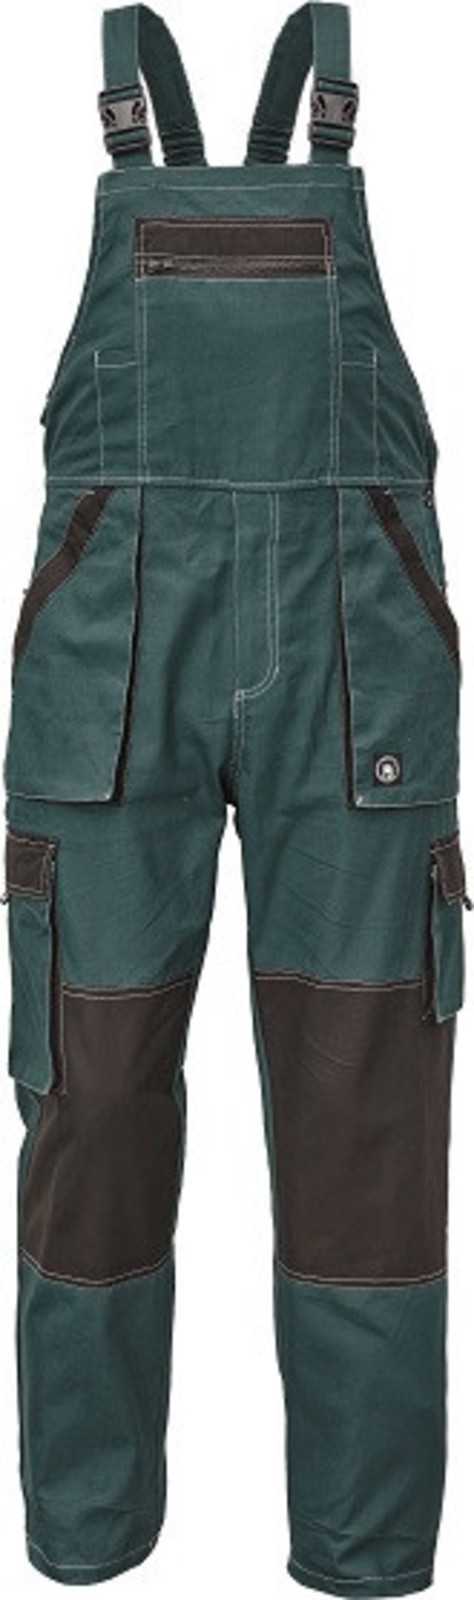 Tenšie bavlnené montérky na traky Max Summer - veľkosť: 50, farba: zelená/čierna